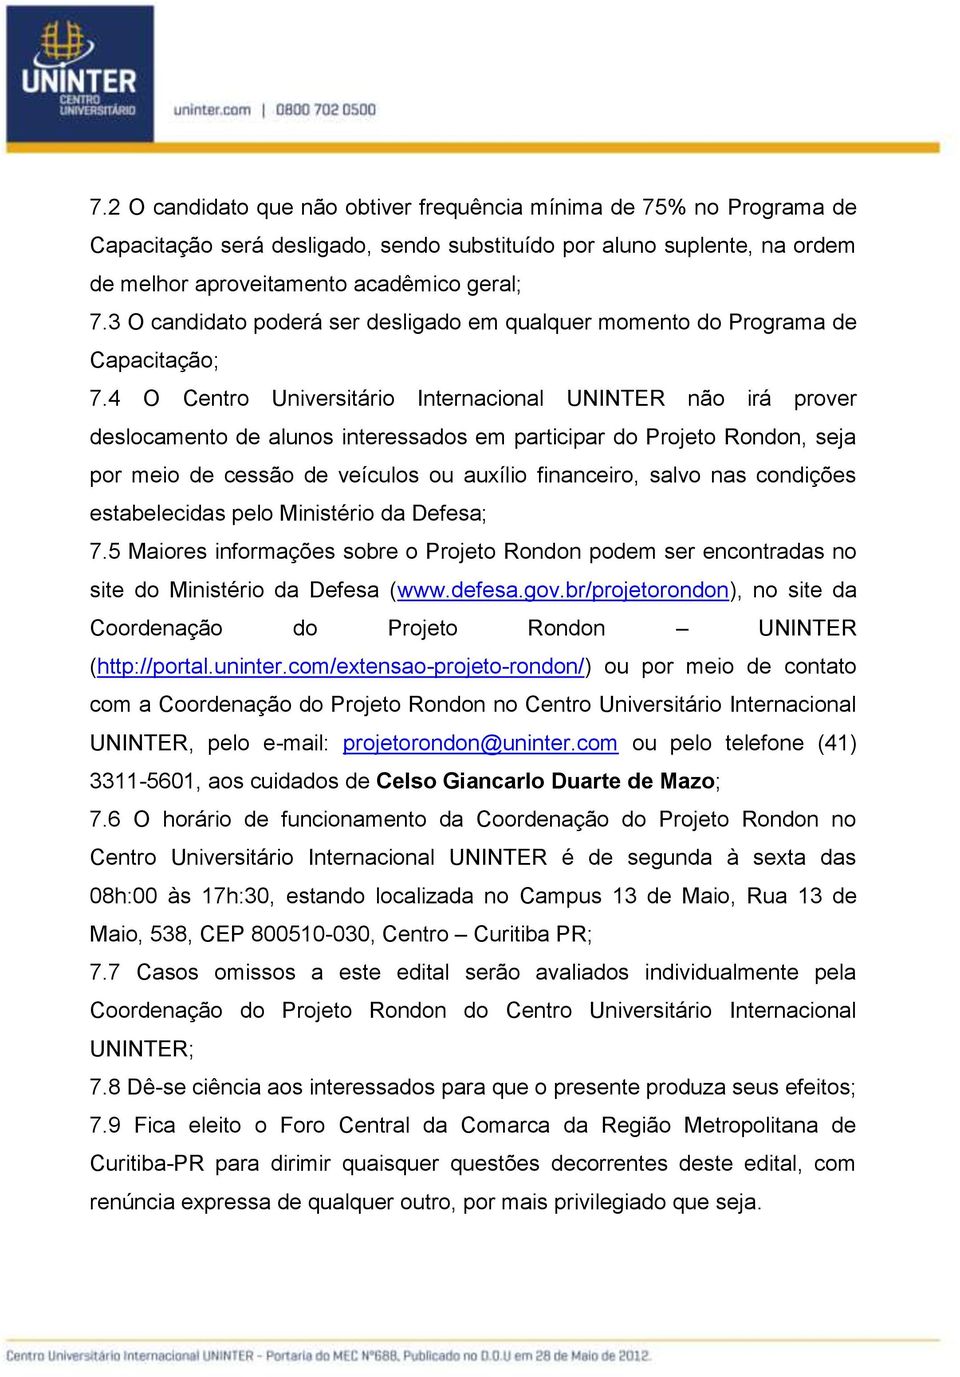 4 O Centro Universitário Internacional UNINTER não irá prover deslocamento de alunos interessados em participar do Projeto Rondon, seja por meio de cessão de veículos ou auxílio financeiro, salvo nas